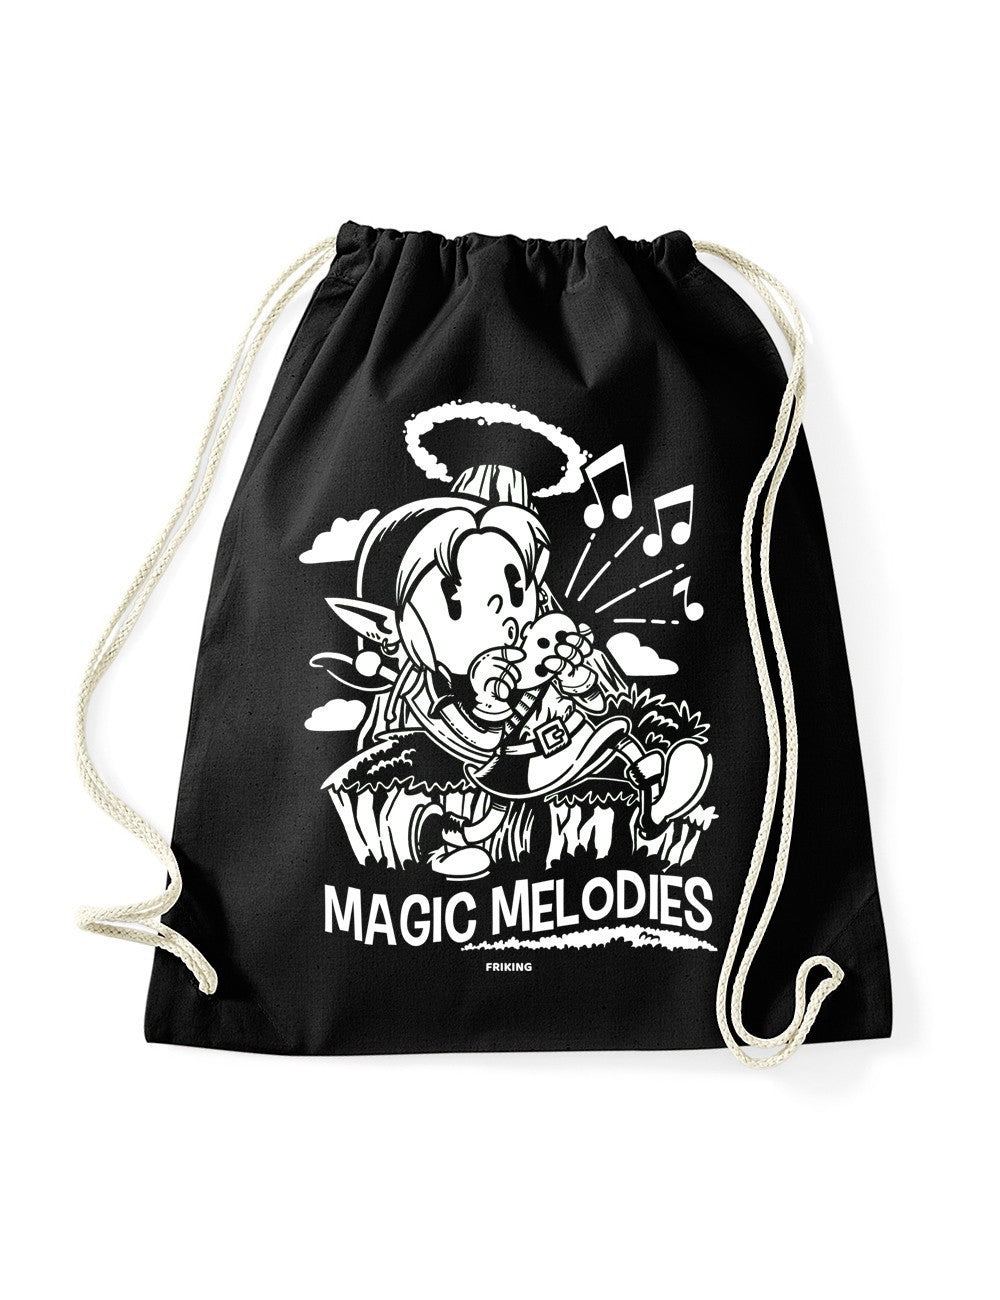  Magic Melodies 